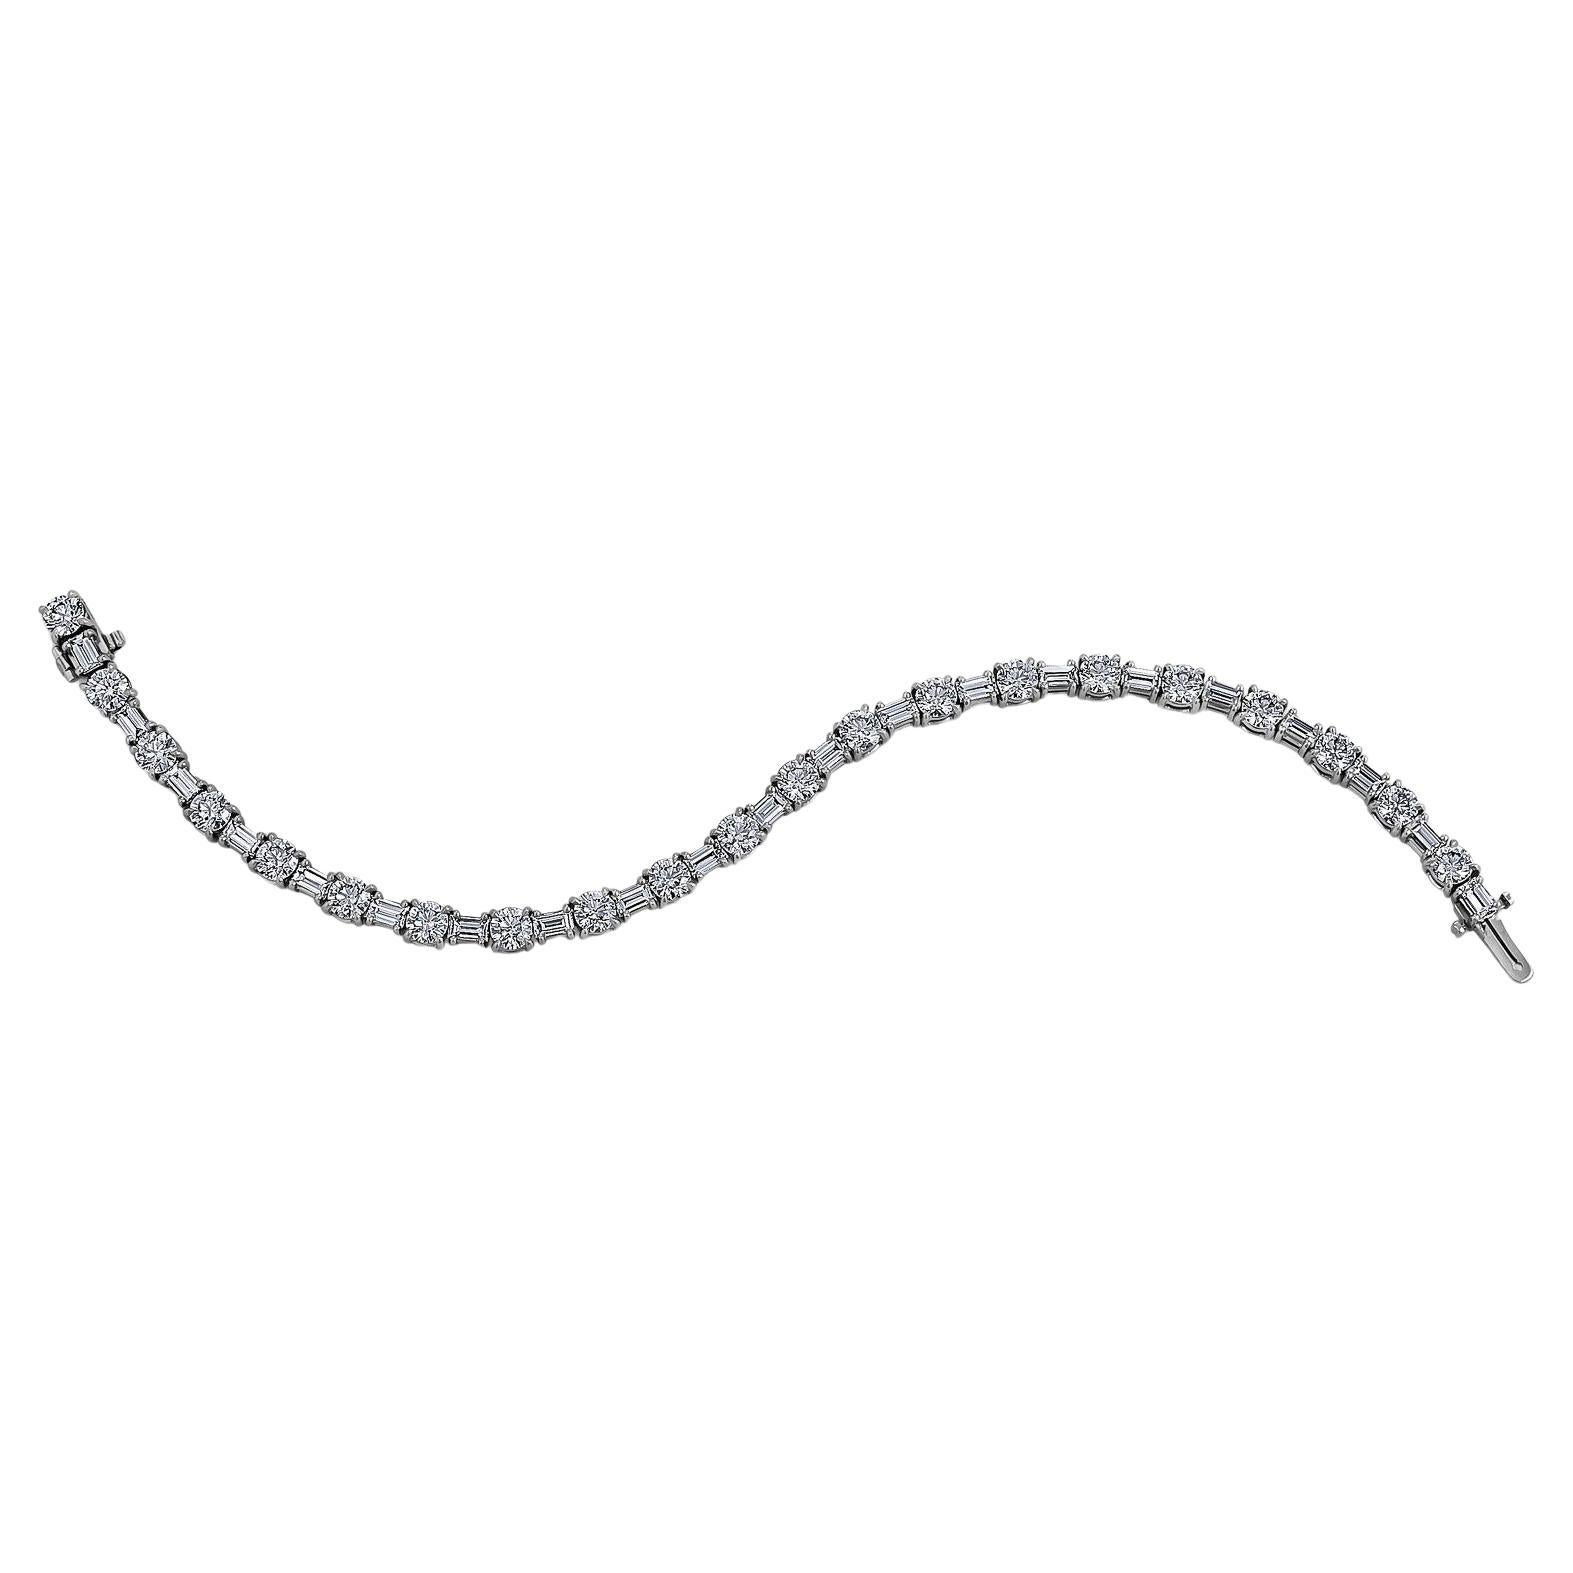 Steven Fox Jewelry Tennis Bracelets